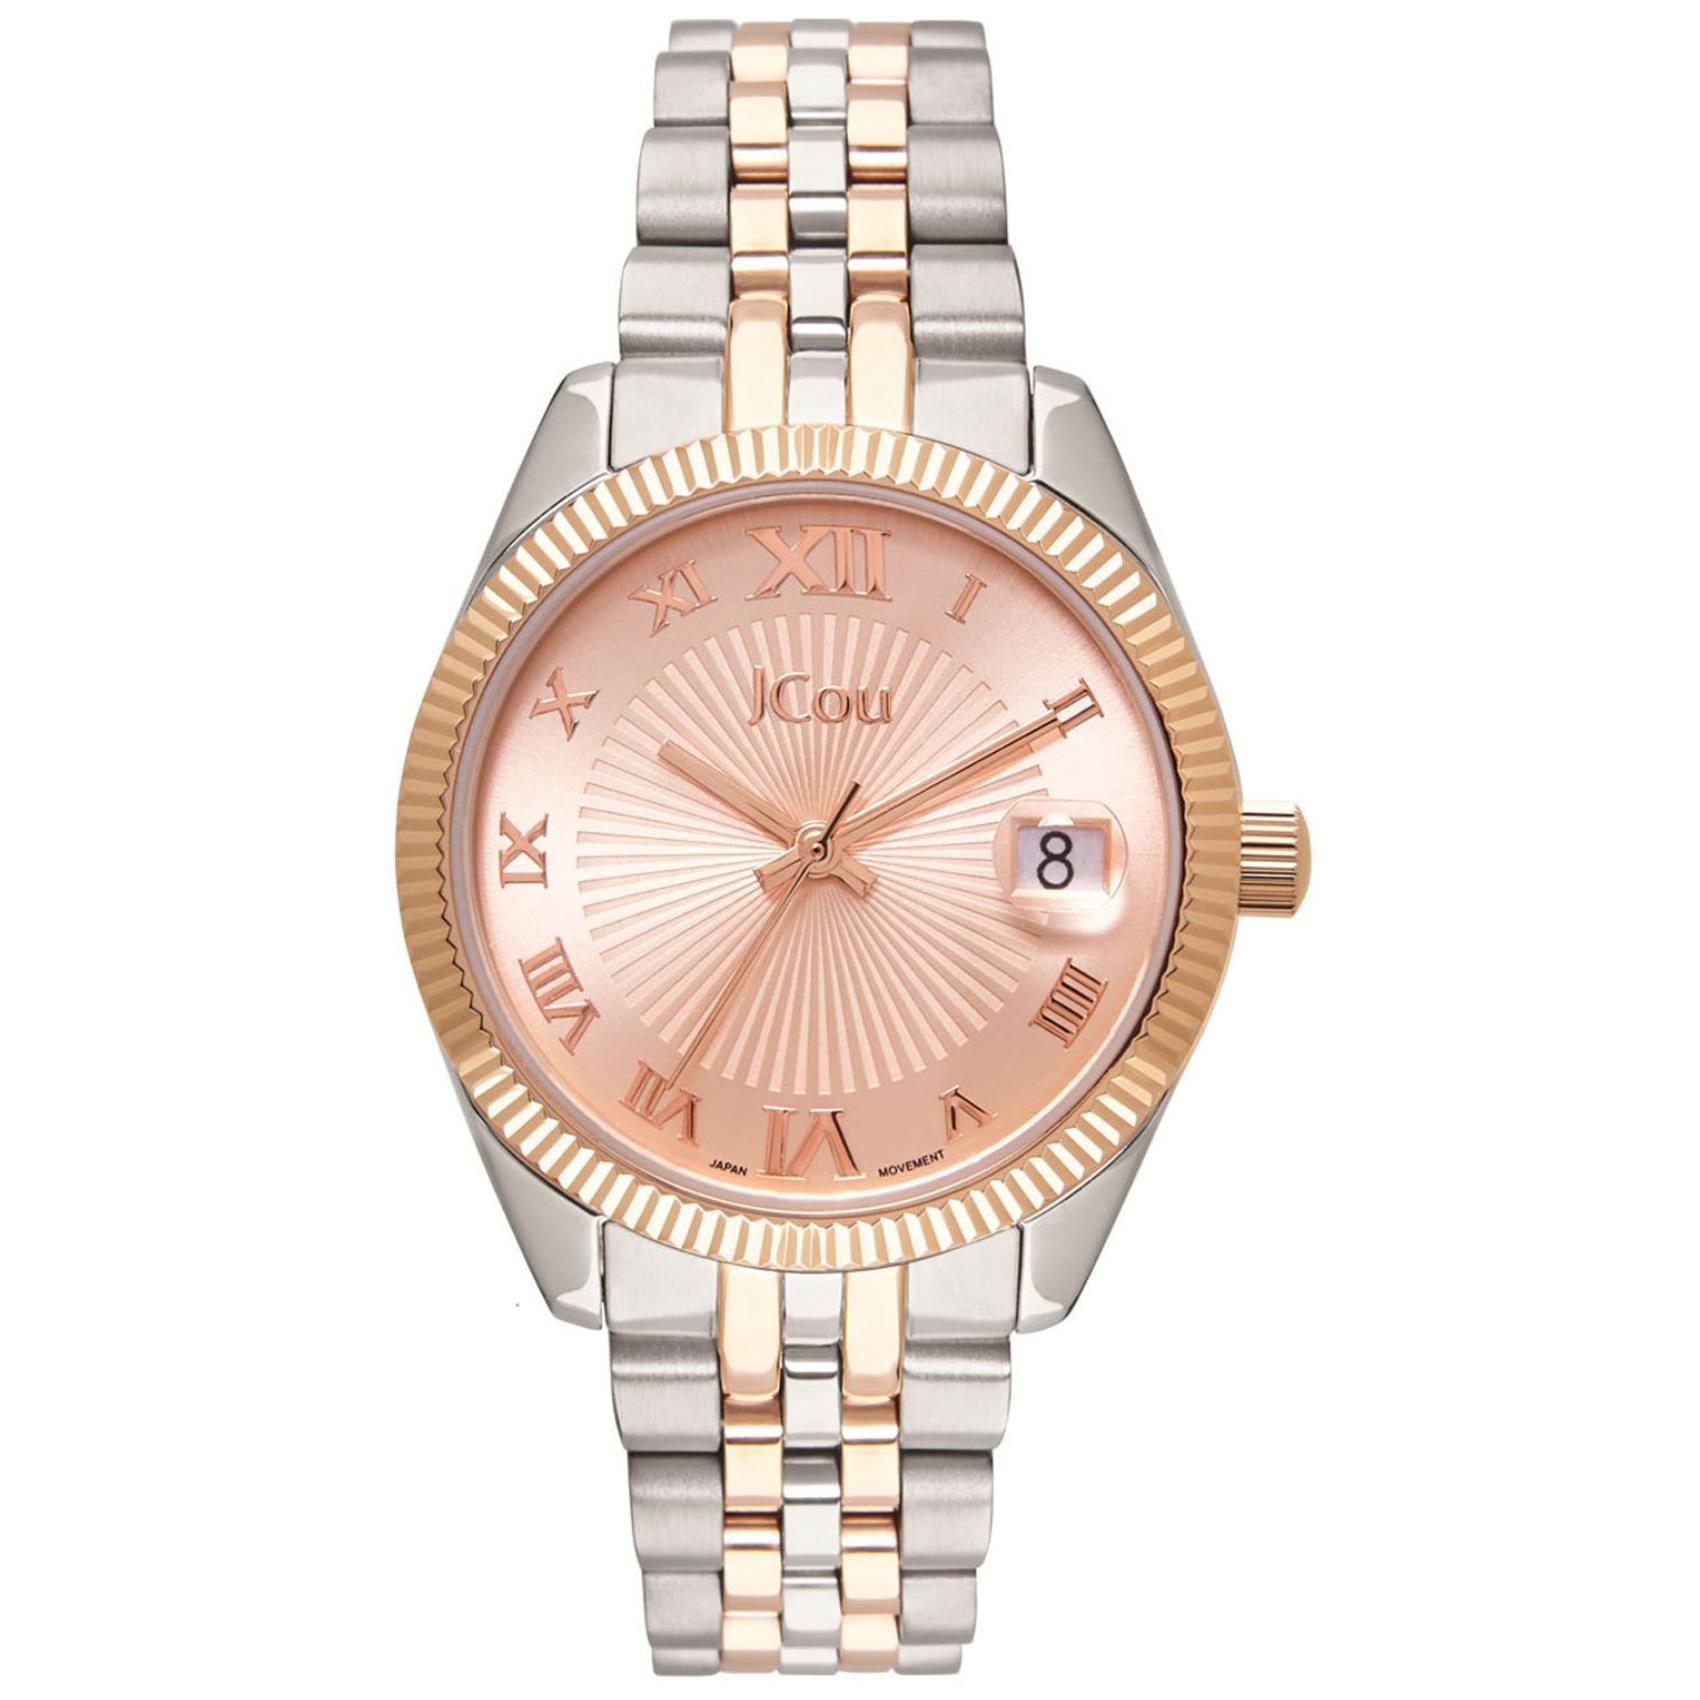 Γυναικείο ρολόι JCOU Queen's Mini JU17031-4 με δίχρωμο ασημί-ροζ χρυσό ατσάλινο μπρασελέ και ροζ χρυσό καντράν 32mm με ημερομηνία.